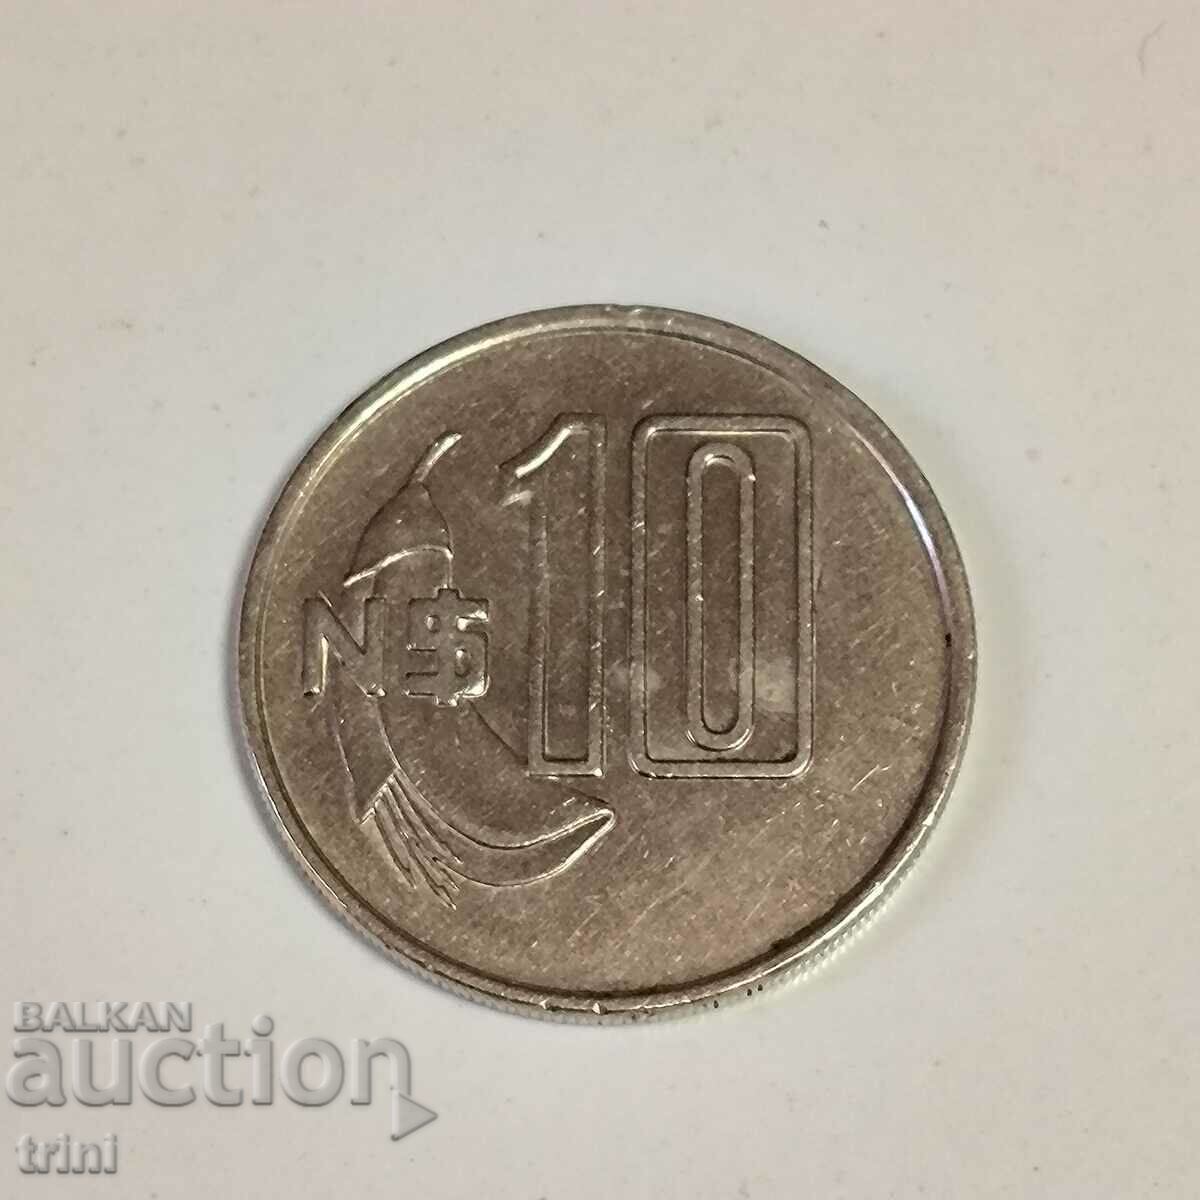 Uruguay 10 pesos 1981 year g68